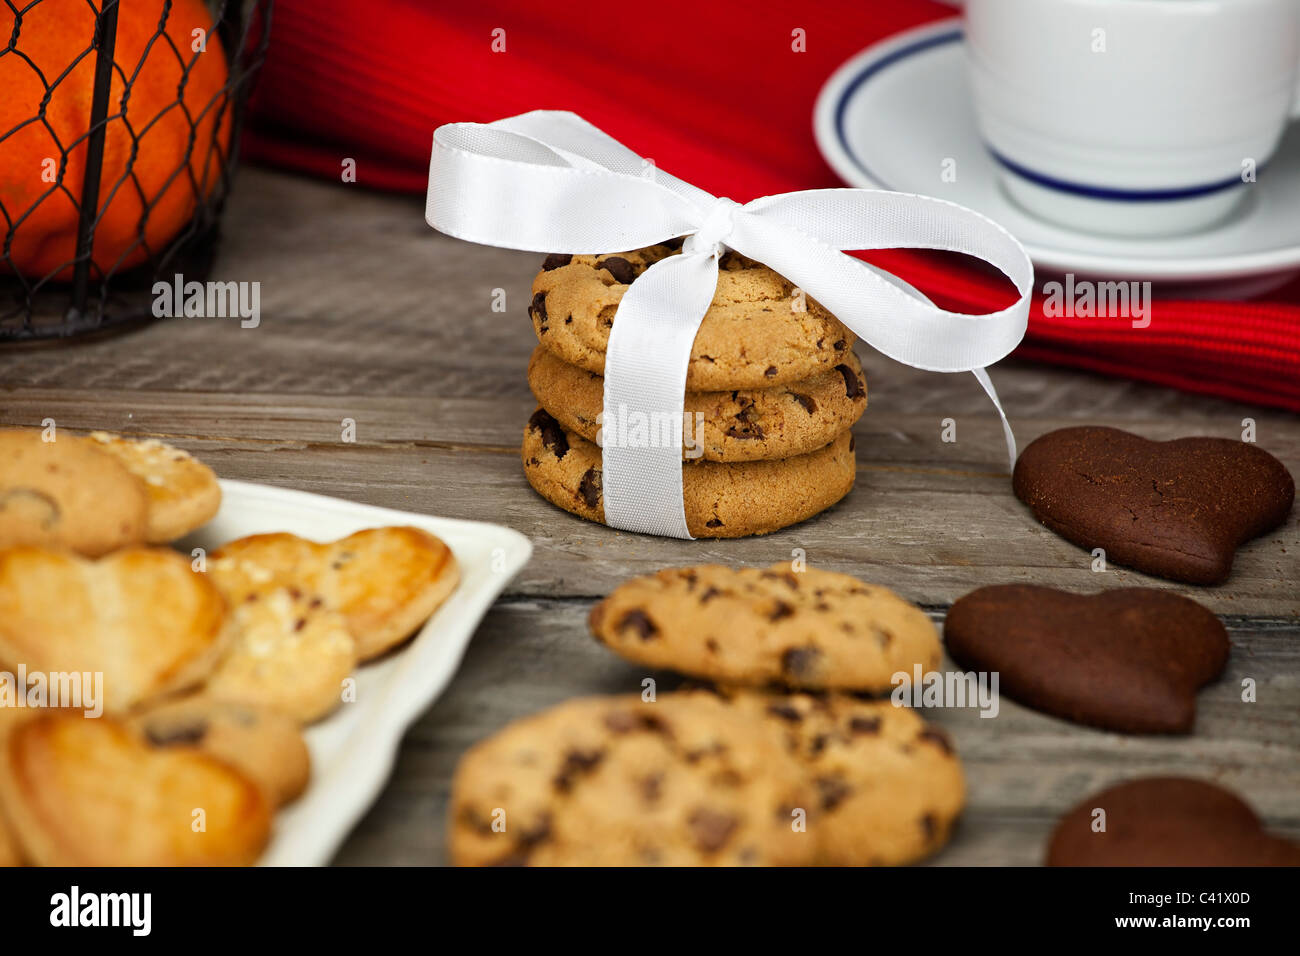 Table décorée pour une collation avec des fruits, du lait et des cookies Banque D'Images